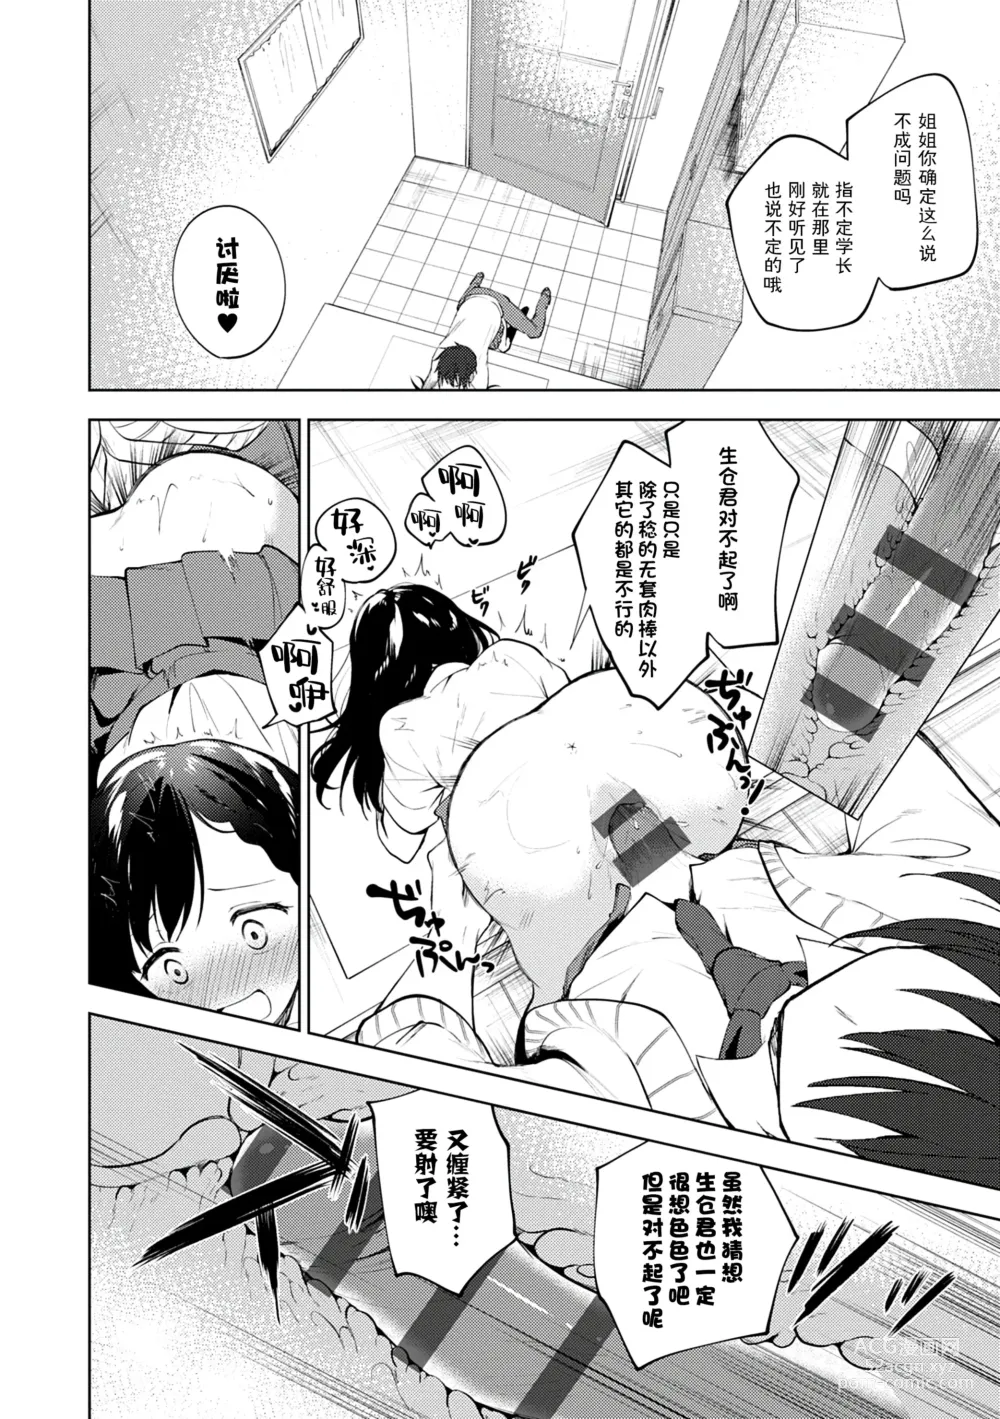 Page 164 of manga Otouto Senyou